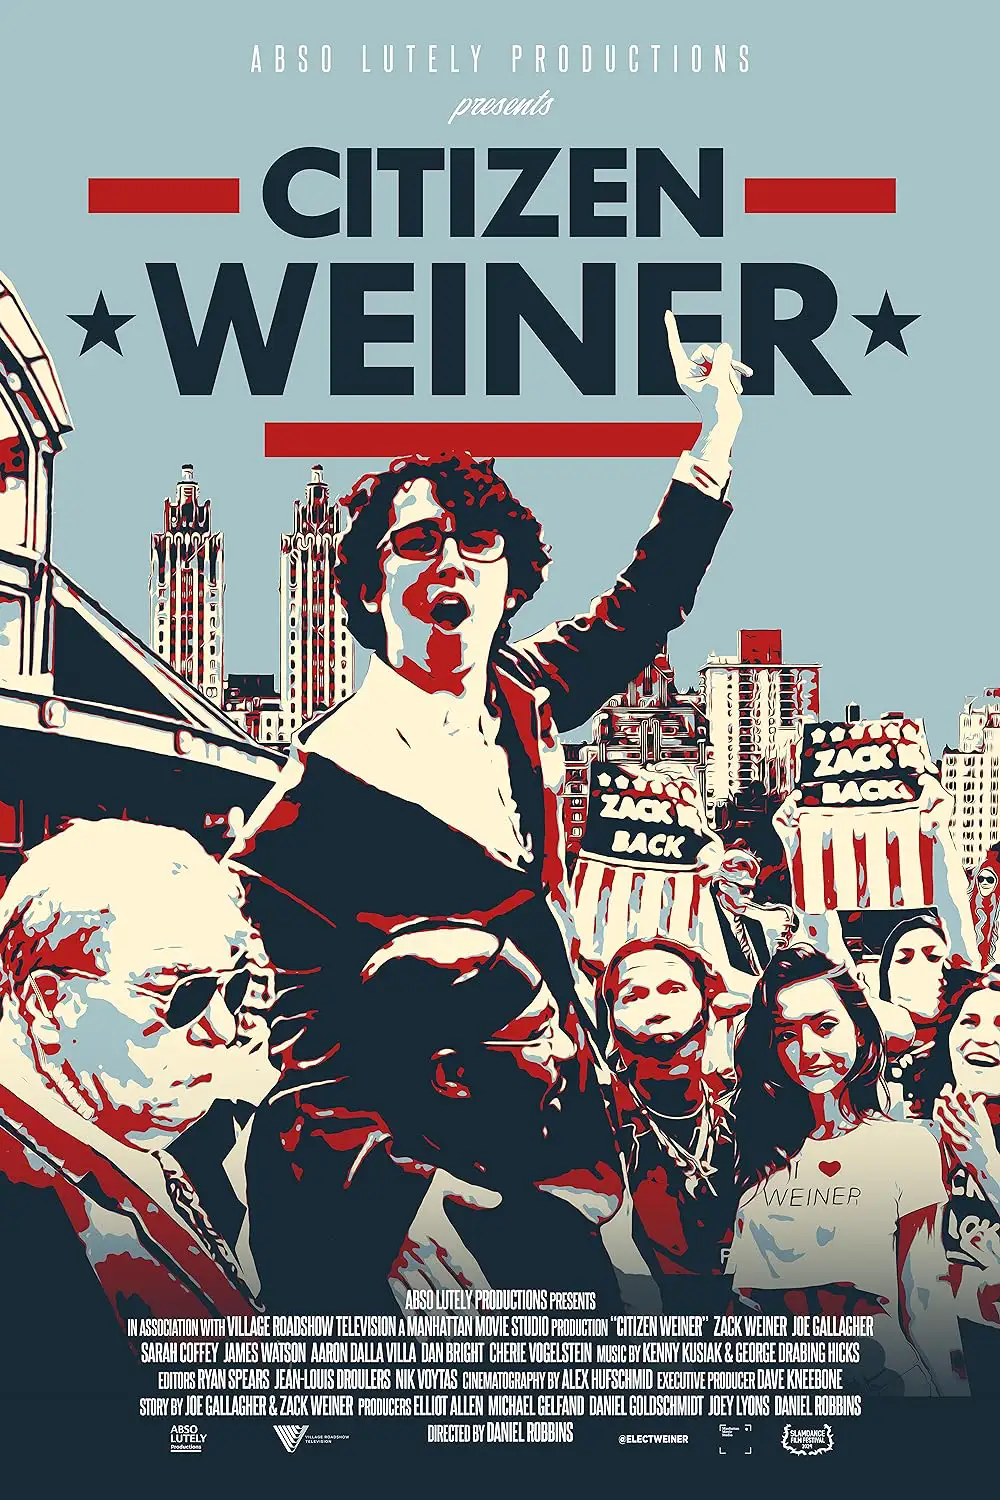 Citizen Weiner